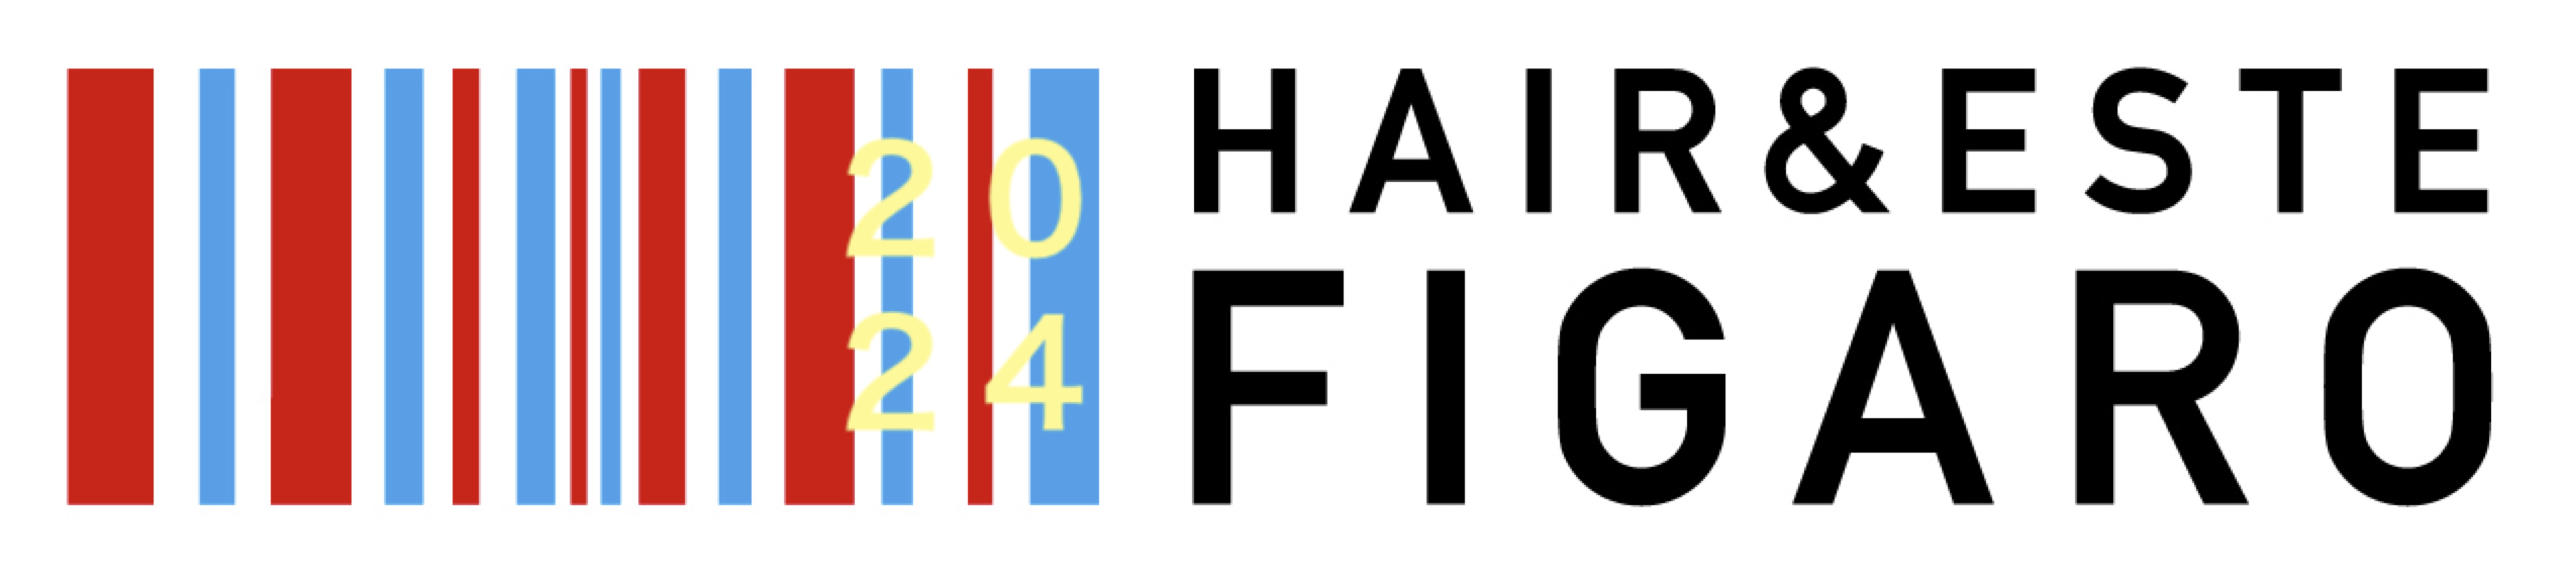 http://figaro-hair.com/blog/logo_yoko%E3%81%AE%E3%82%B3%E3%83%94%E3%83%BC2.jpg